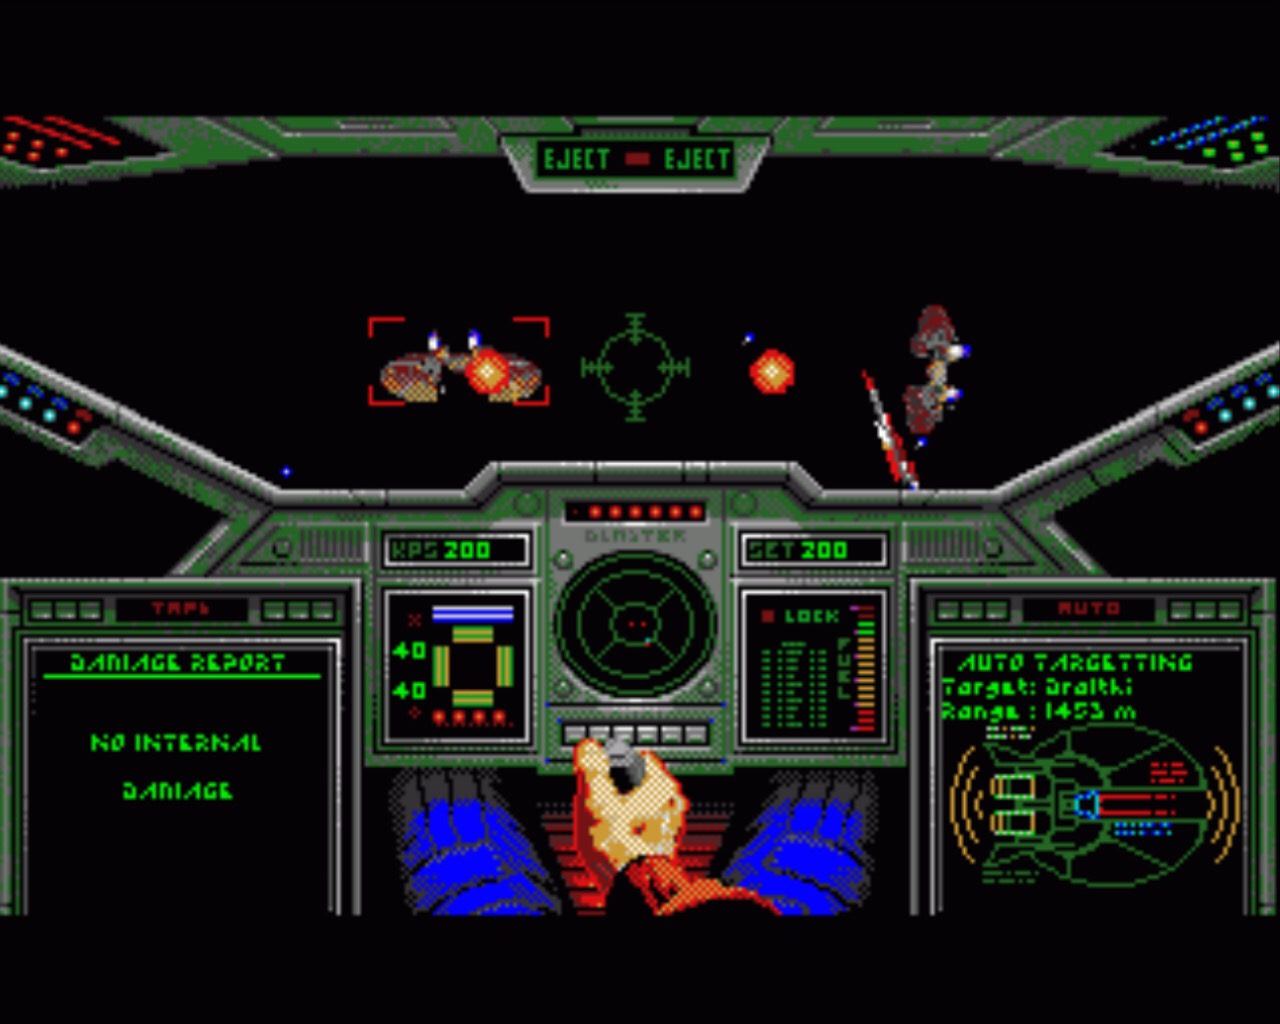 Unglaublich aber endlich war: da Ur-VGA/386er-Wing Commander auf dem A500